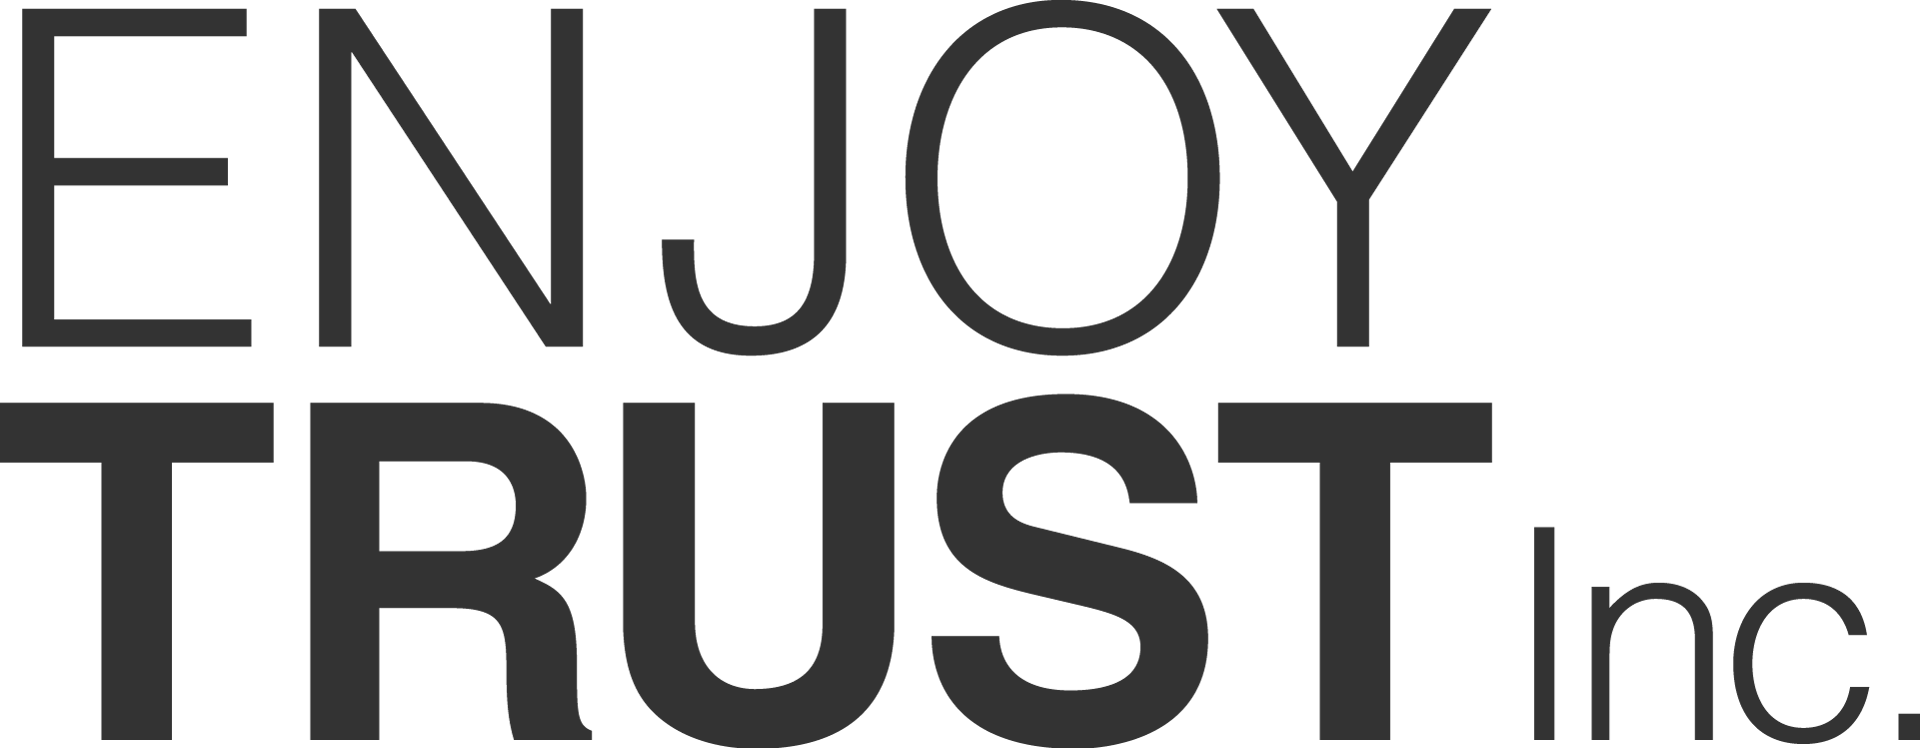 ENJOYTRUST logo